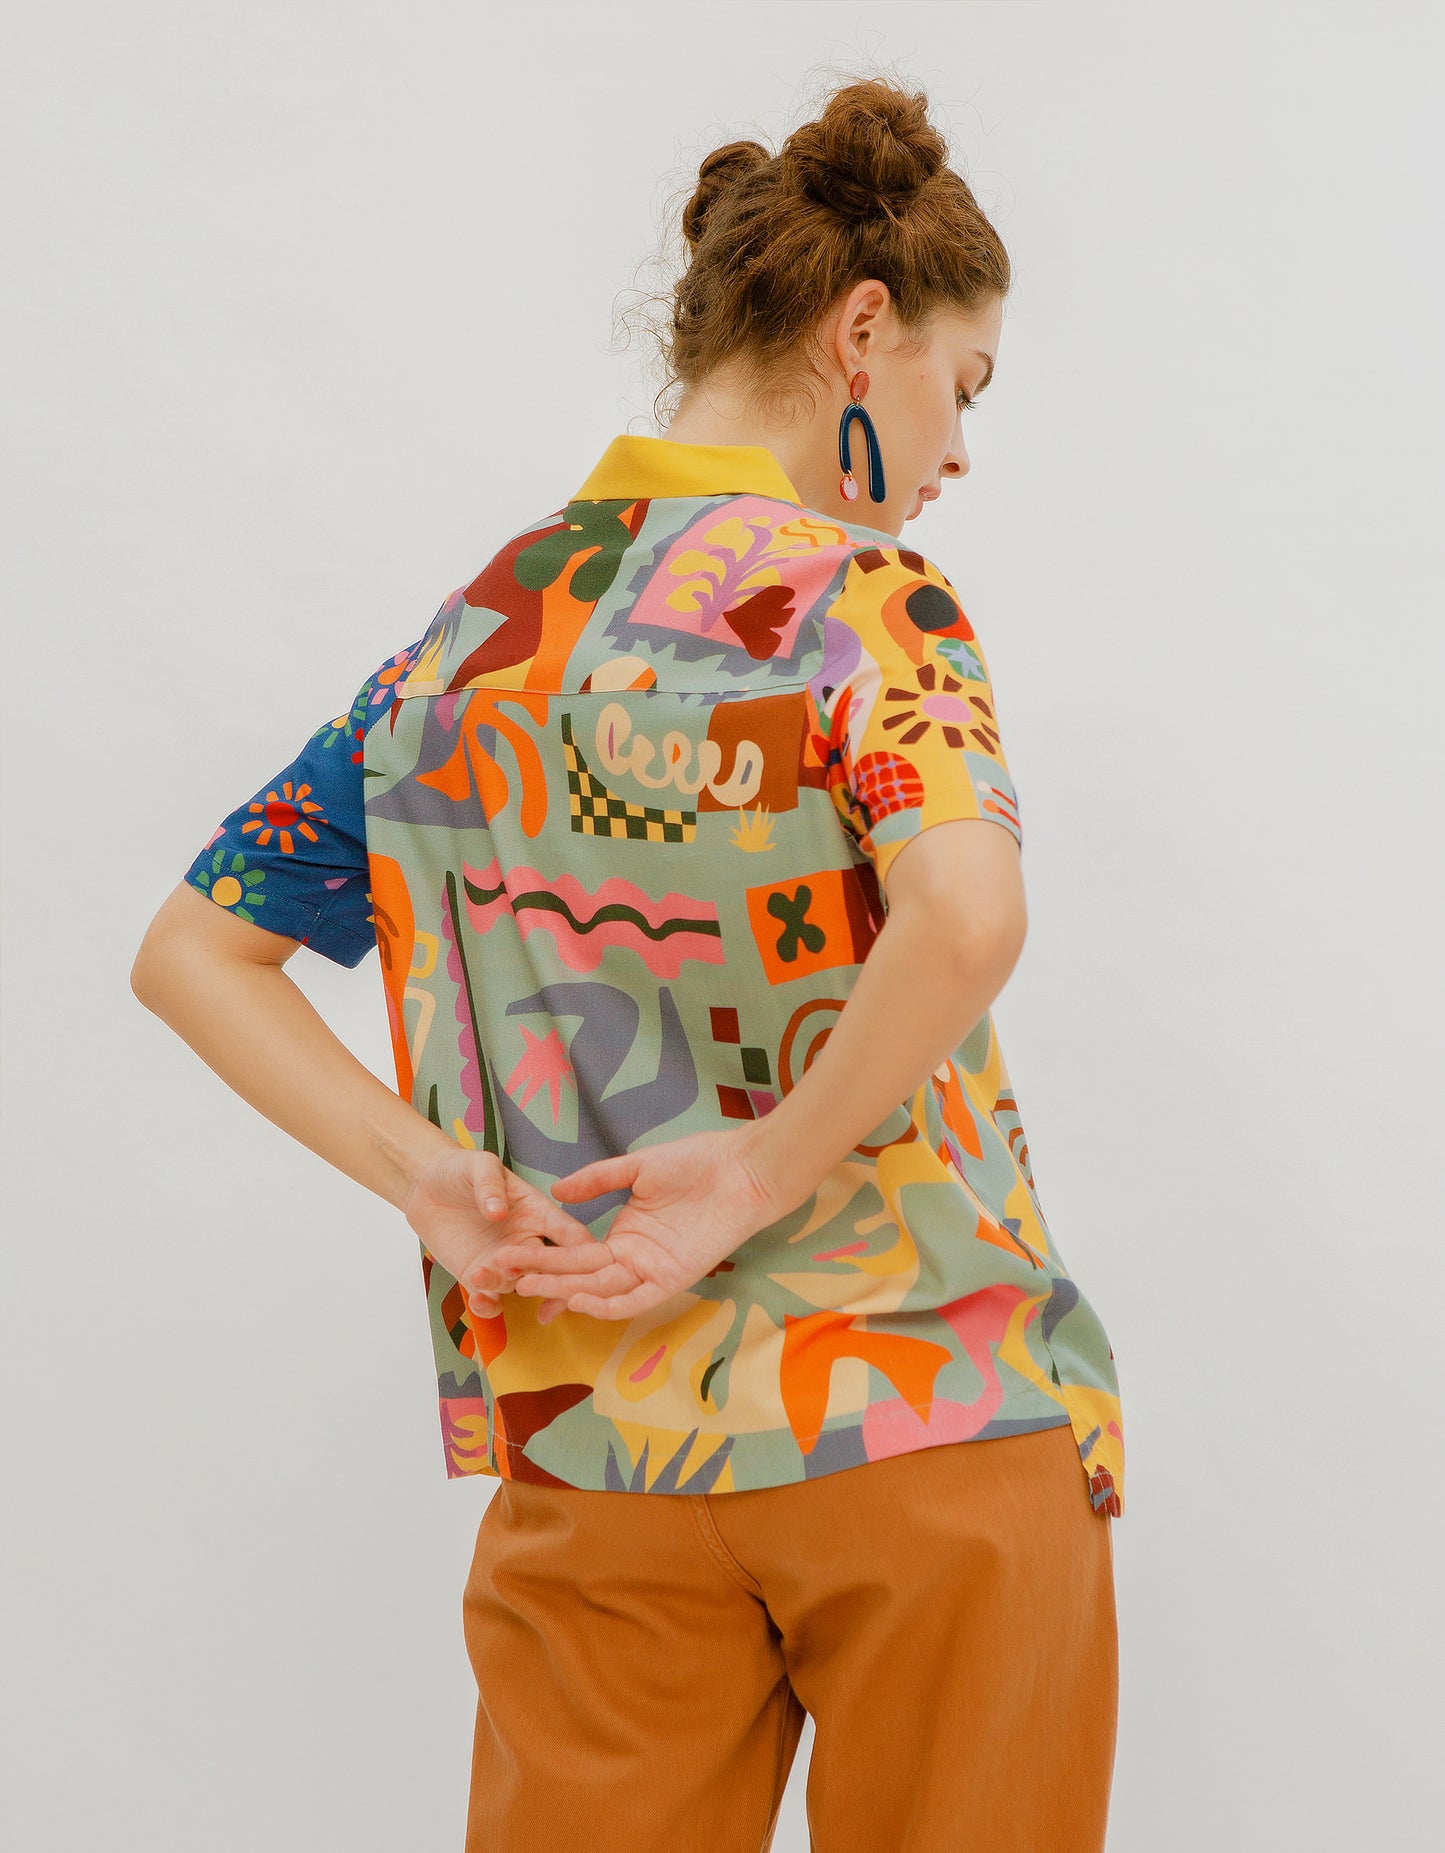 Matisse Cut-Outs Open Collar Shirt